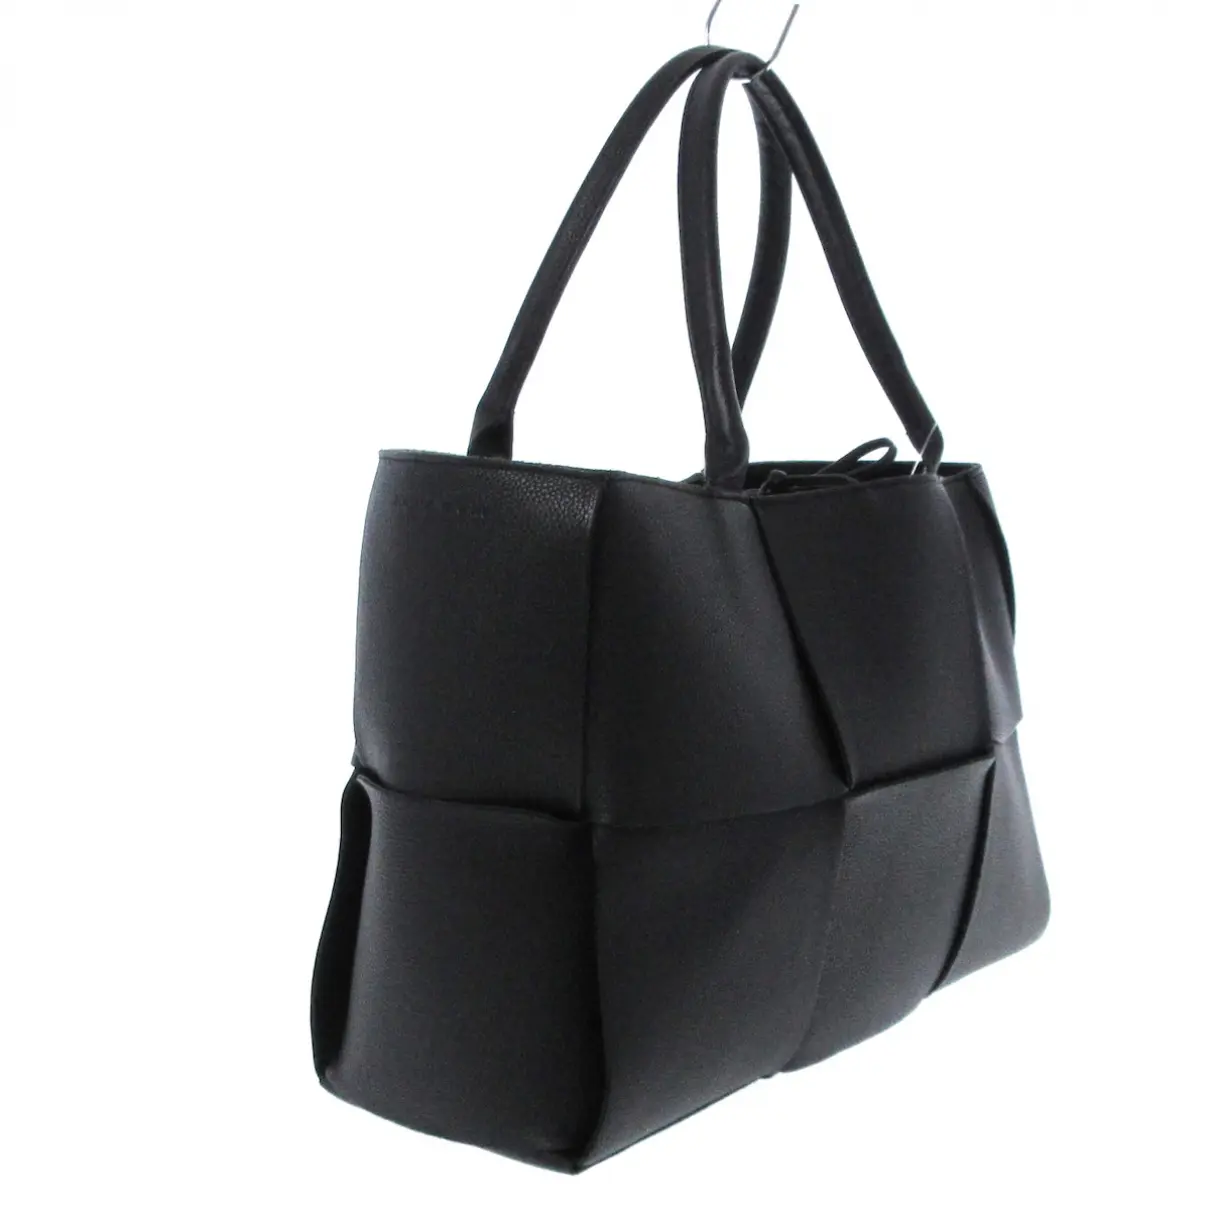 Buy BOTT Leather handbag online